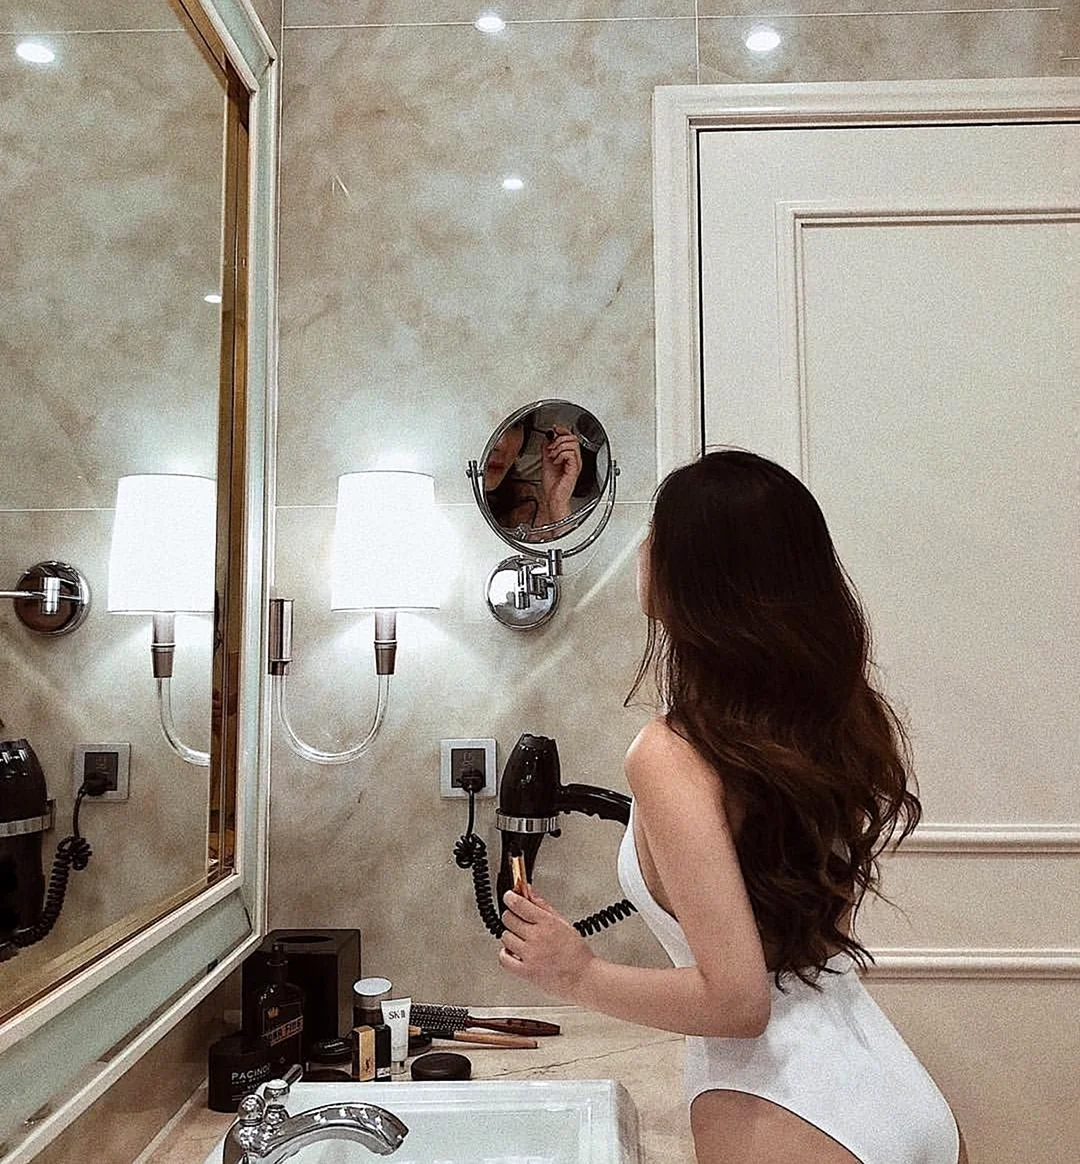 Фотосессия в ванной перед зеркалом. Красивая девушка